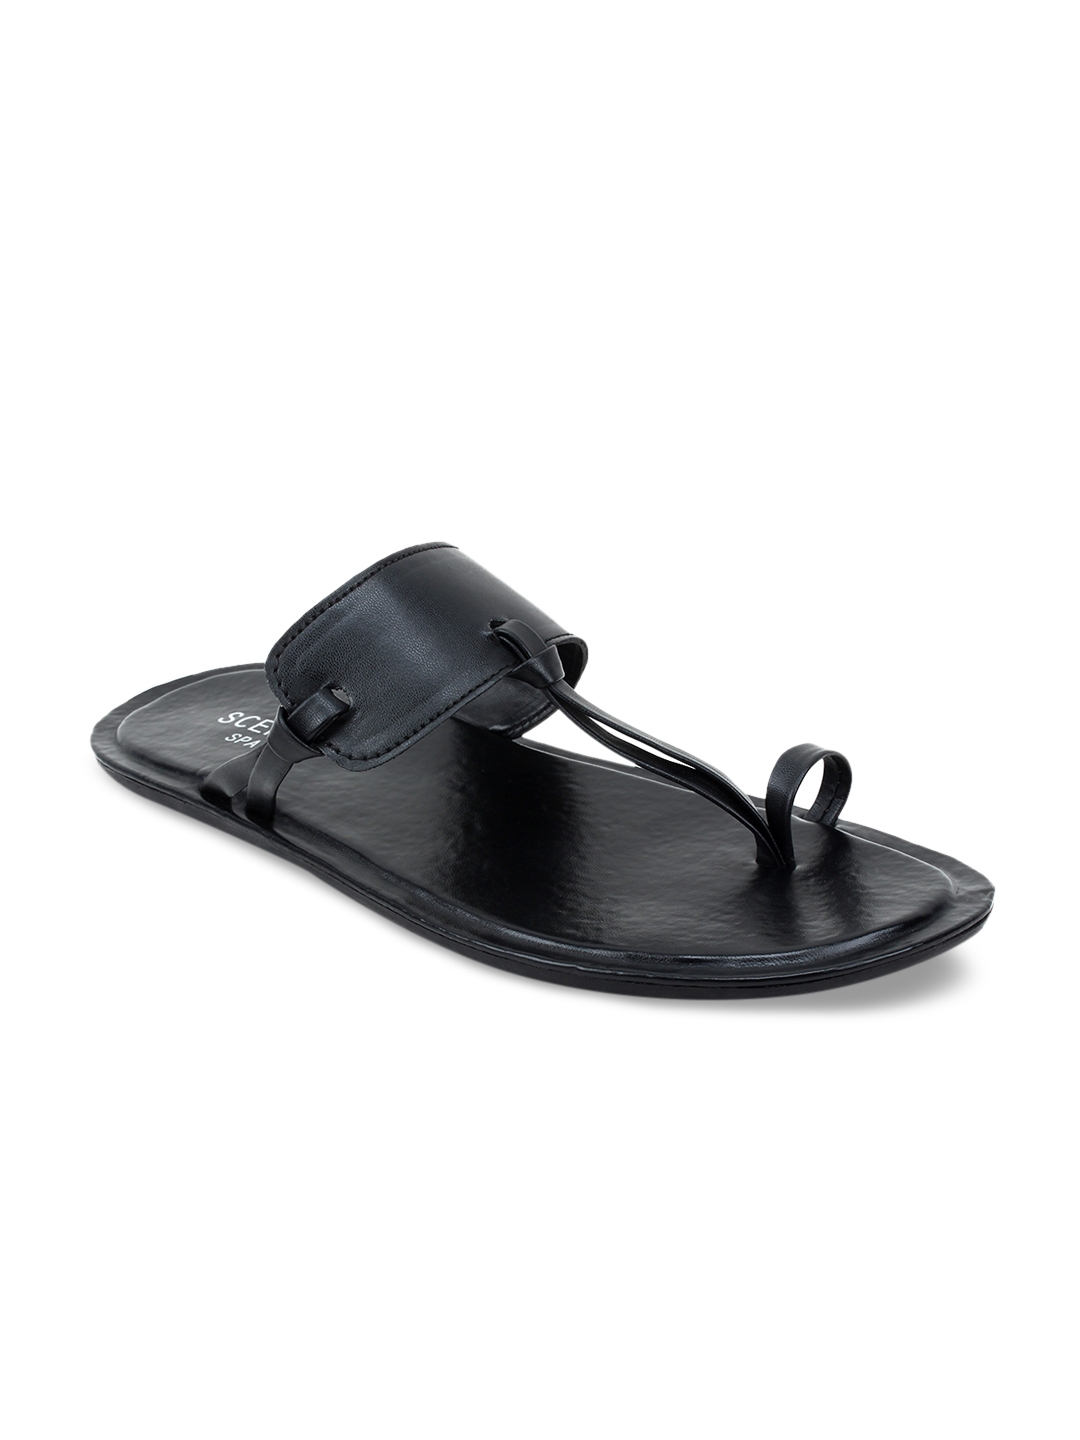 Buy SCENTRA Men Black Solid One Toe Sandals - Sandals for Men 8475173 ...